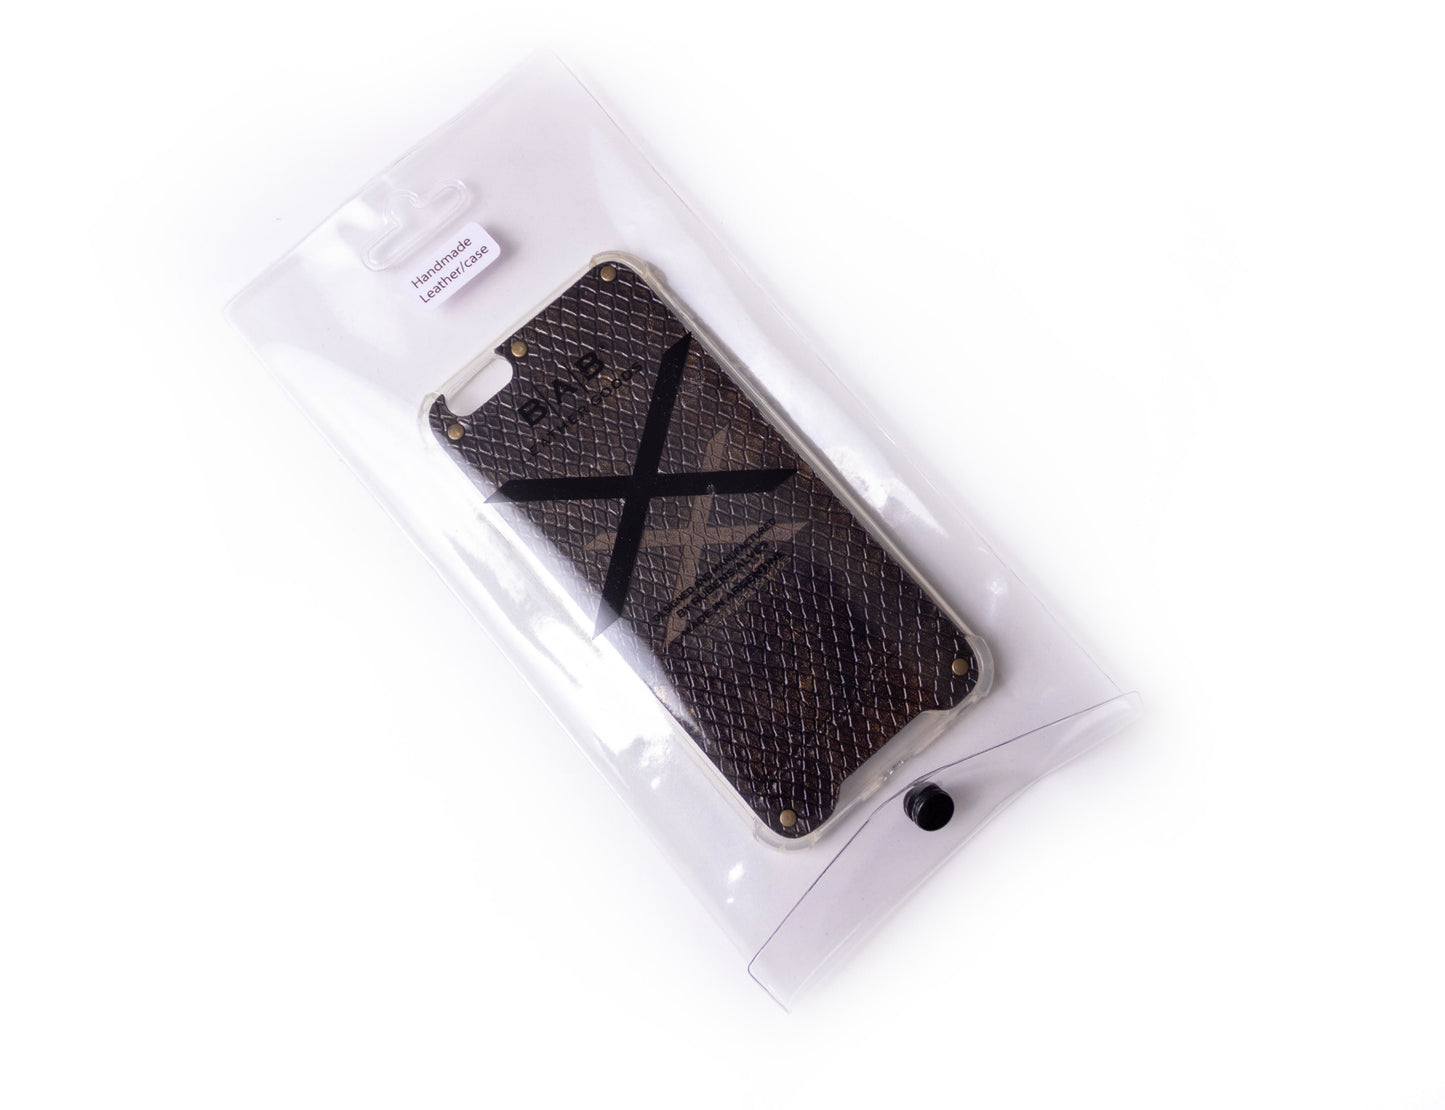 Capa para iPhone de Couro Genuíno Python Dourado Texturizado cortado e gravado a laser, 5 Rebites de Bronze.- F36